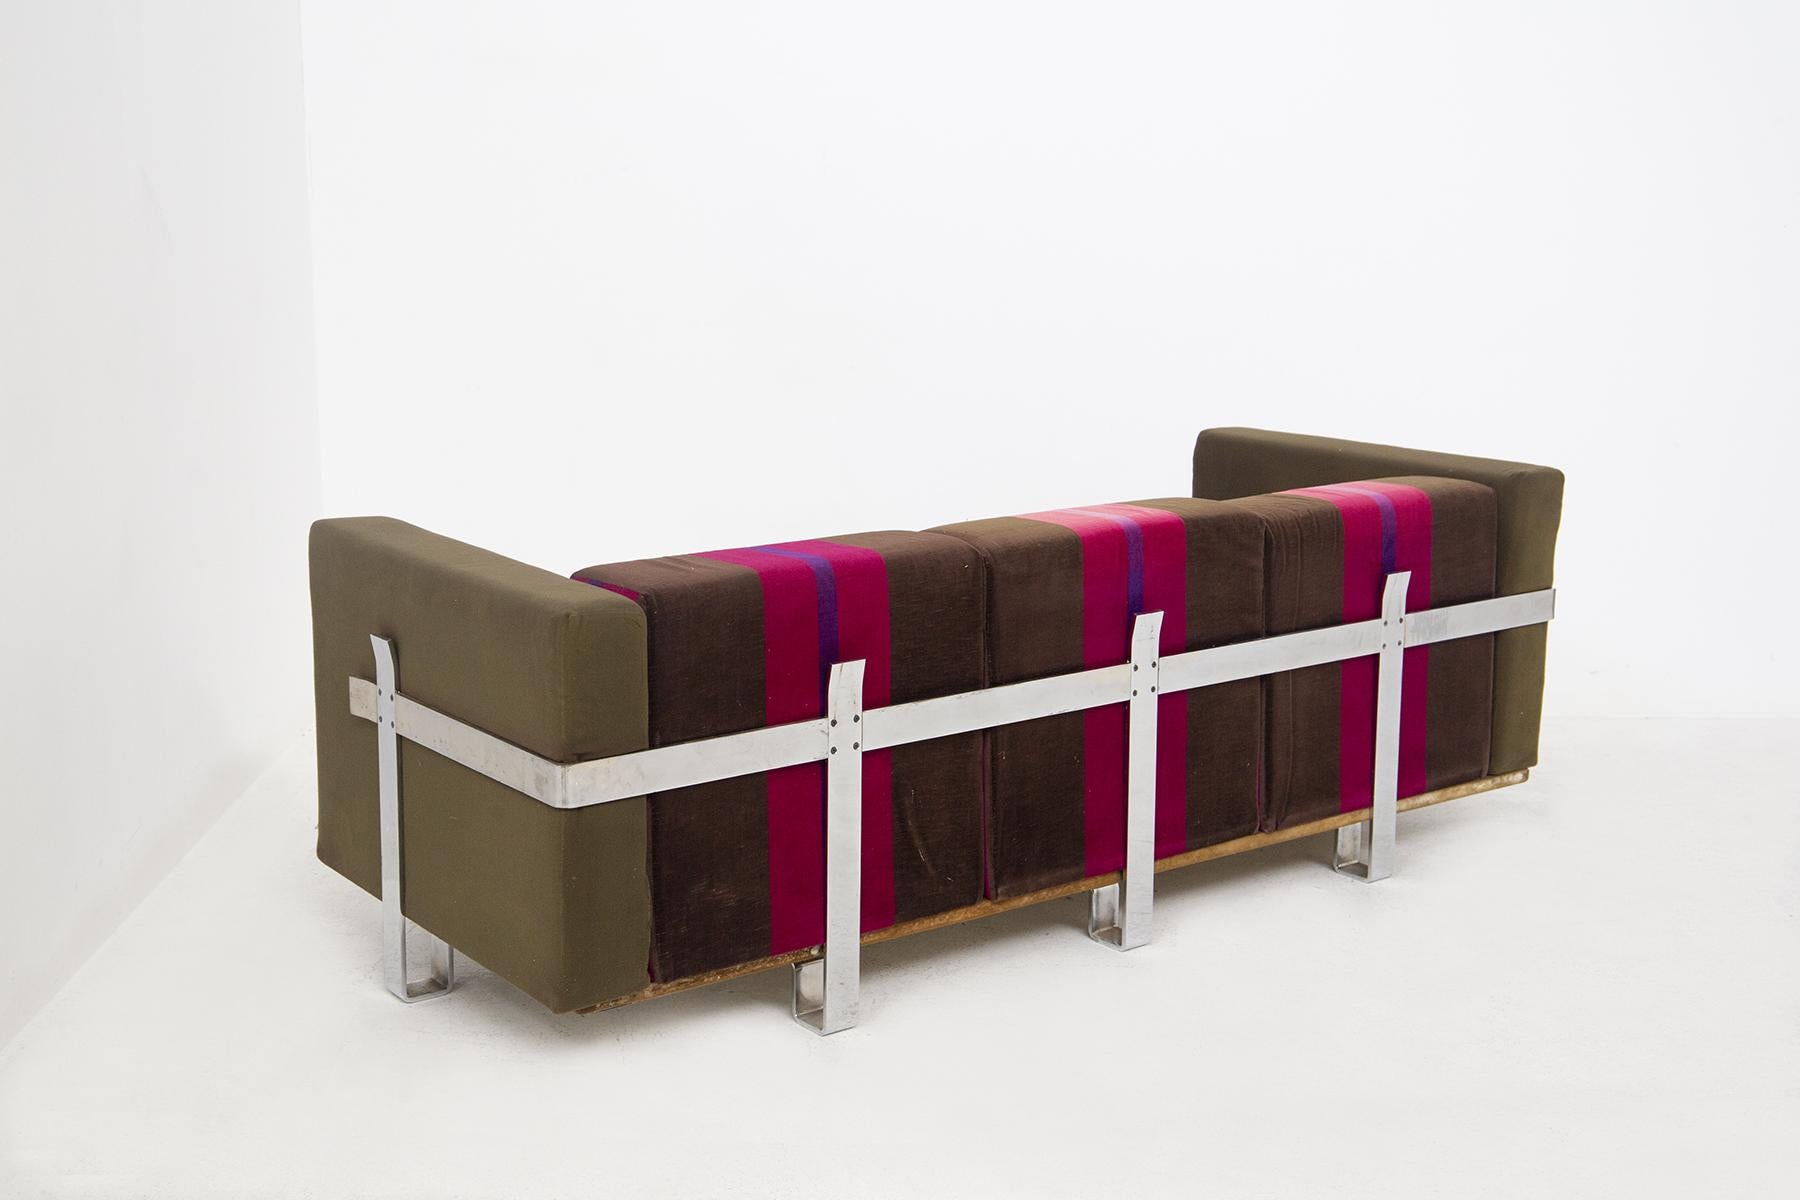 Das wunderschöne Sofa aus Stoff, entworfen von Luigi Caccia Dominioni für den feinen Hersteller Azucena Italia.
Das Vintage-Sofa ist aus braunem, fuchsiafarbenem und lila gestreiftem Stoff gefertigt, der einen sehr bunten geometrischen Effekt